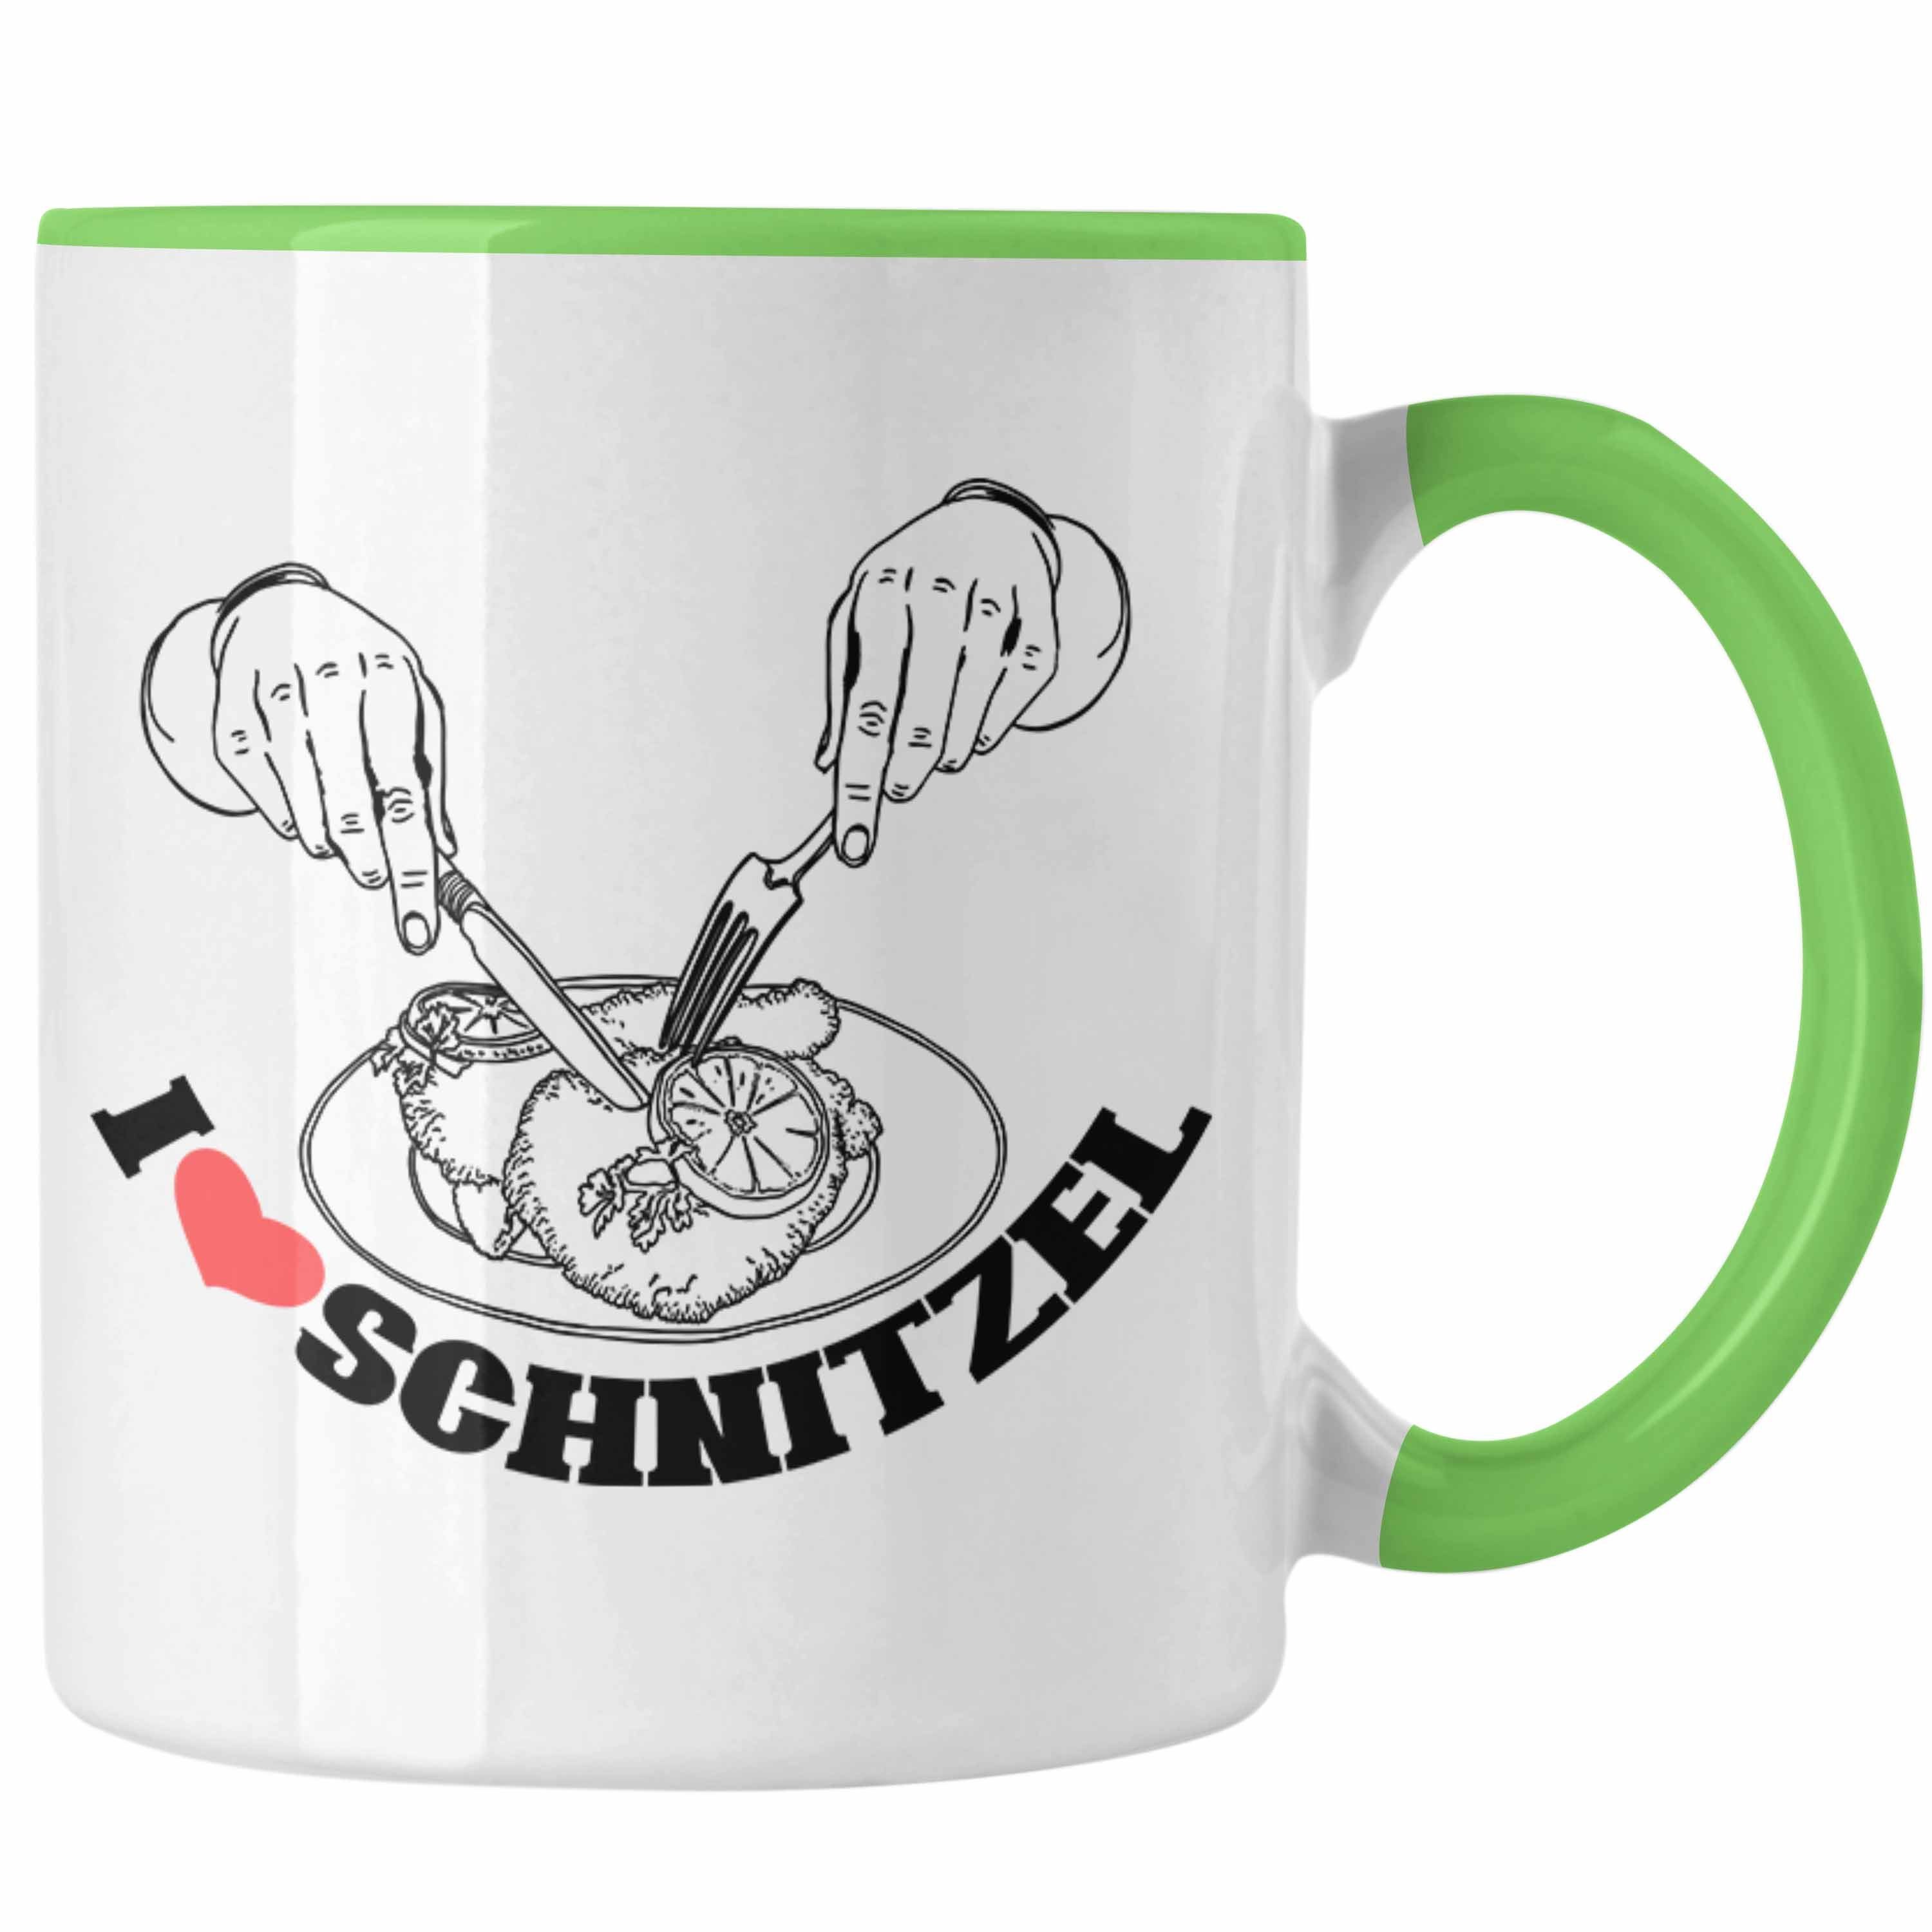 Trendation Tasse Schnitzel-Tasse Geschenk für Schnitzel-Liebhaber Grün